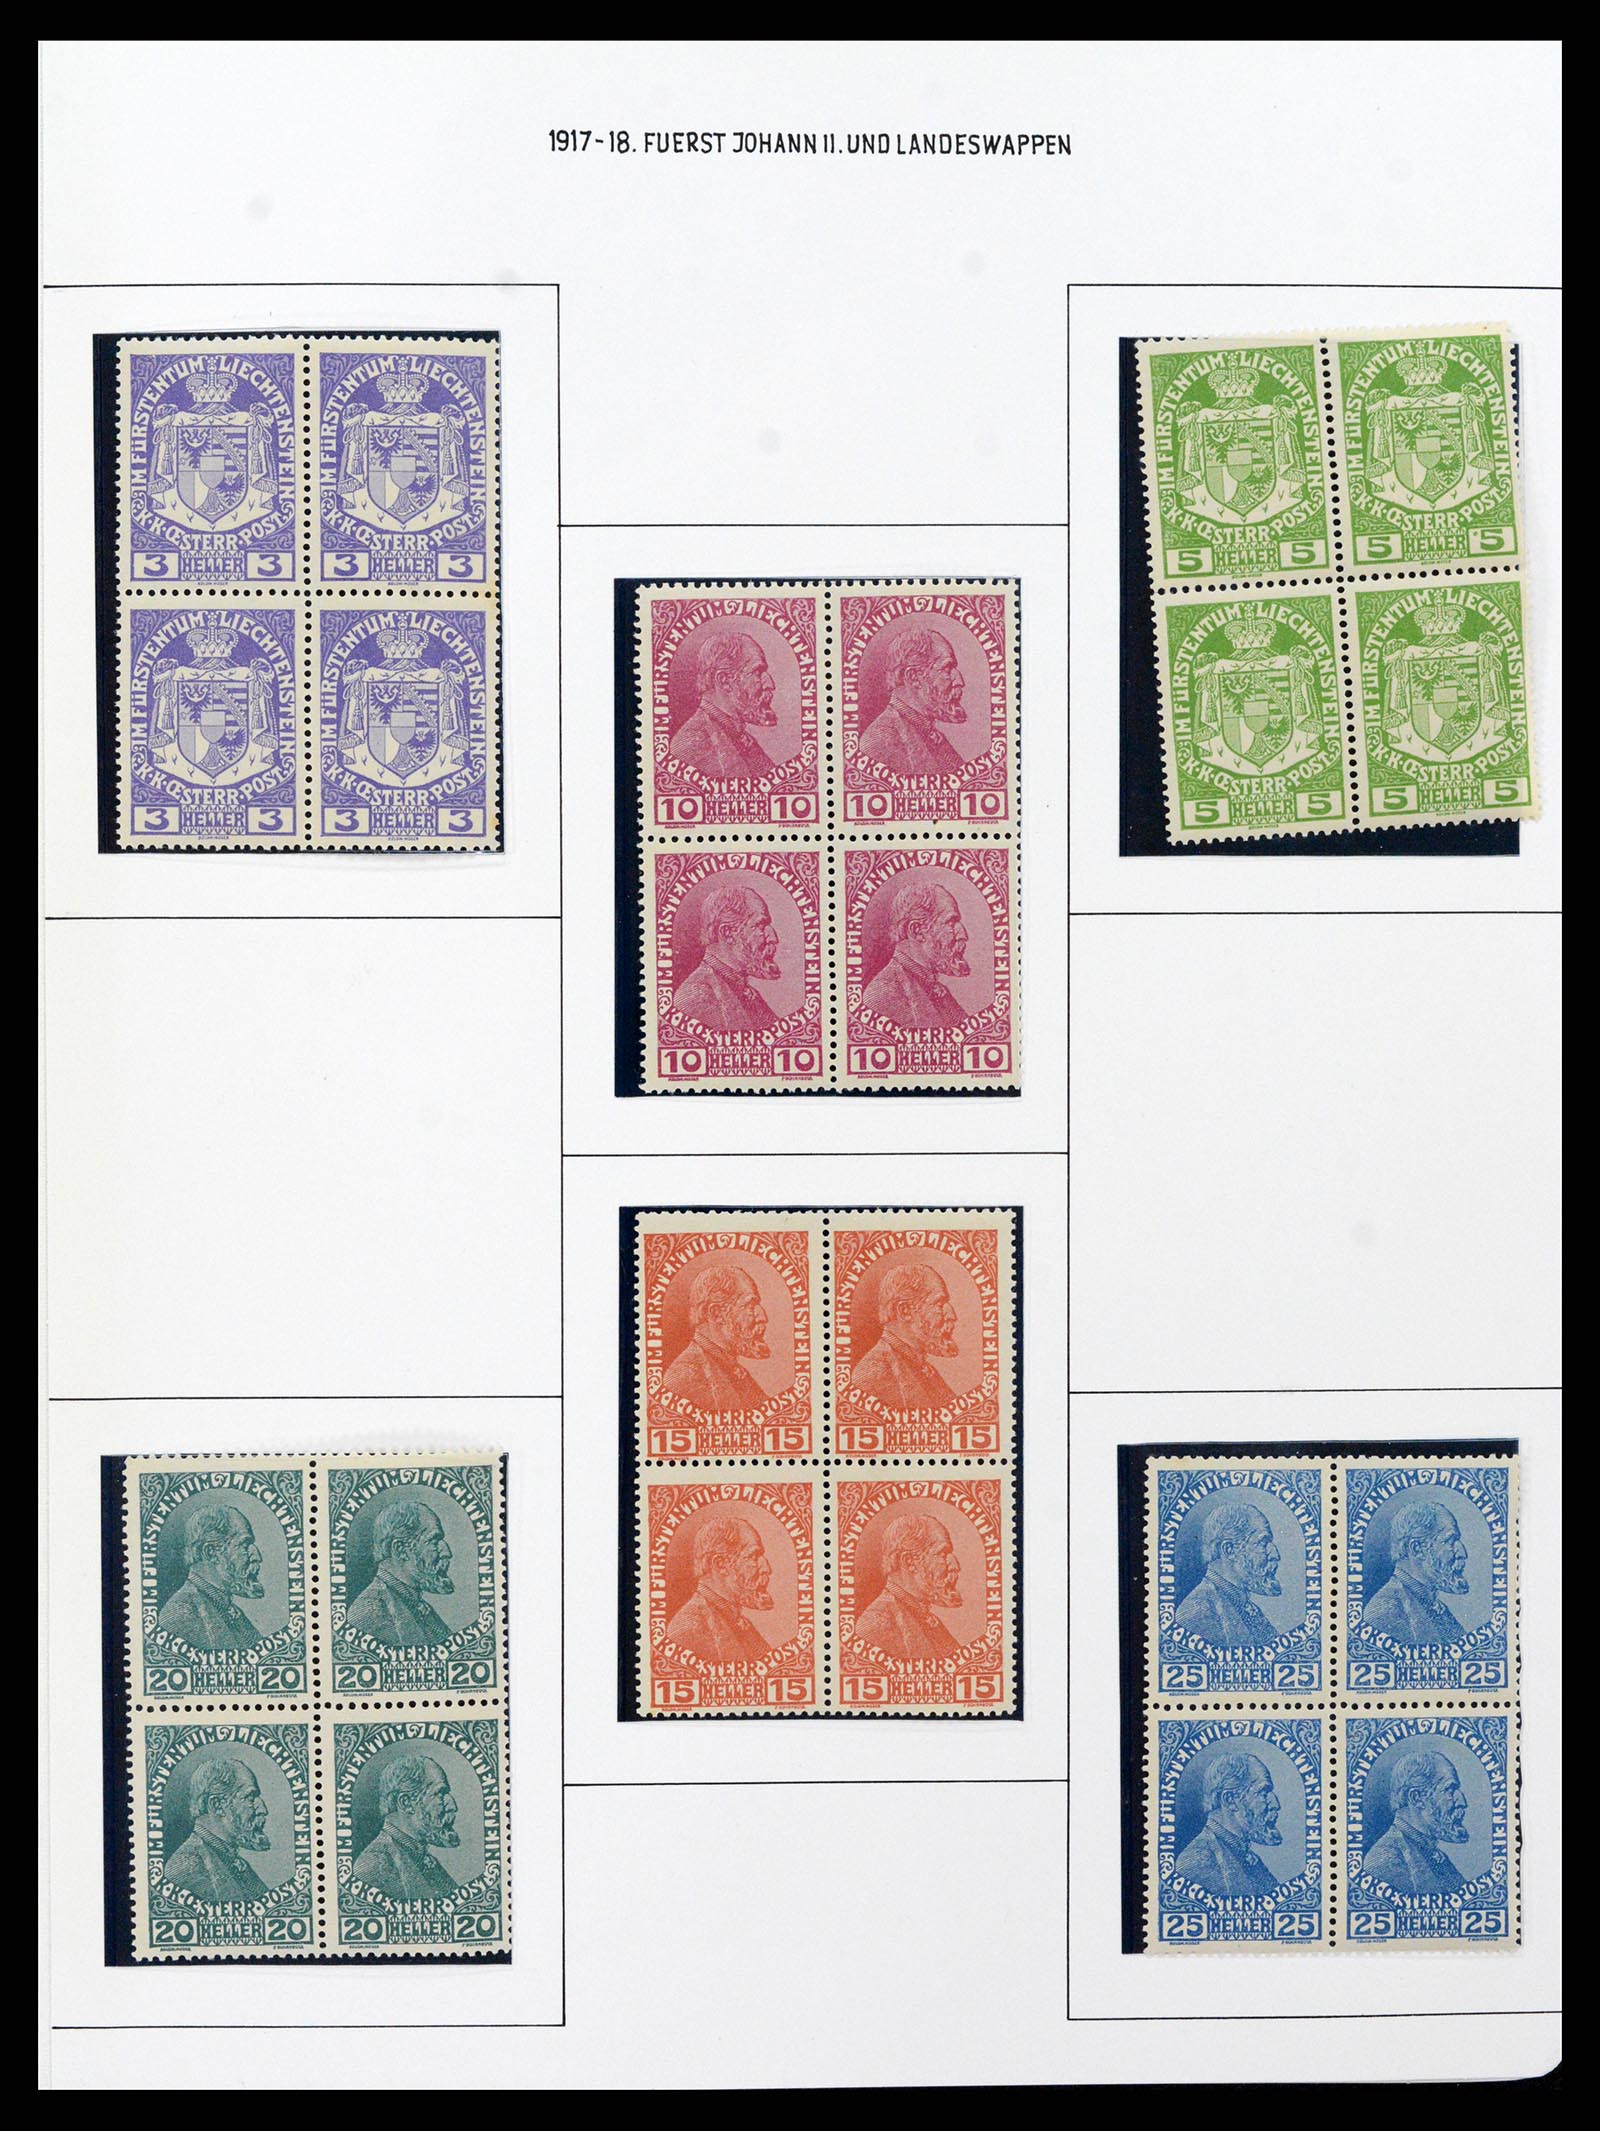 37150 0021 - Stamp collection 37150 Liechtenstein supercollection 1912-1962.